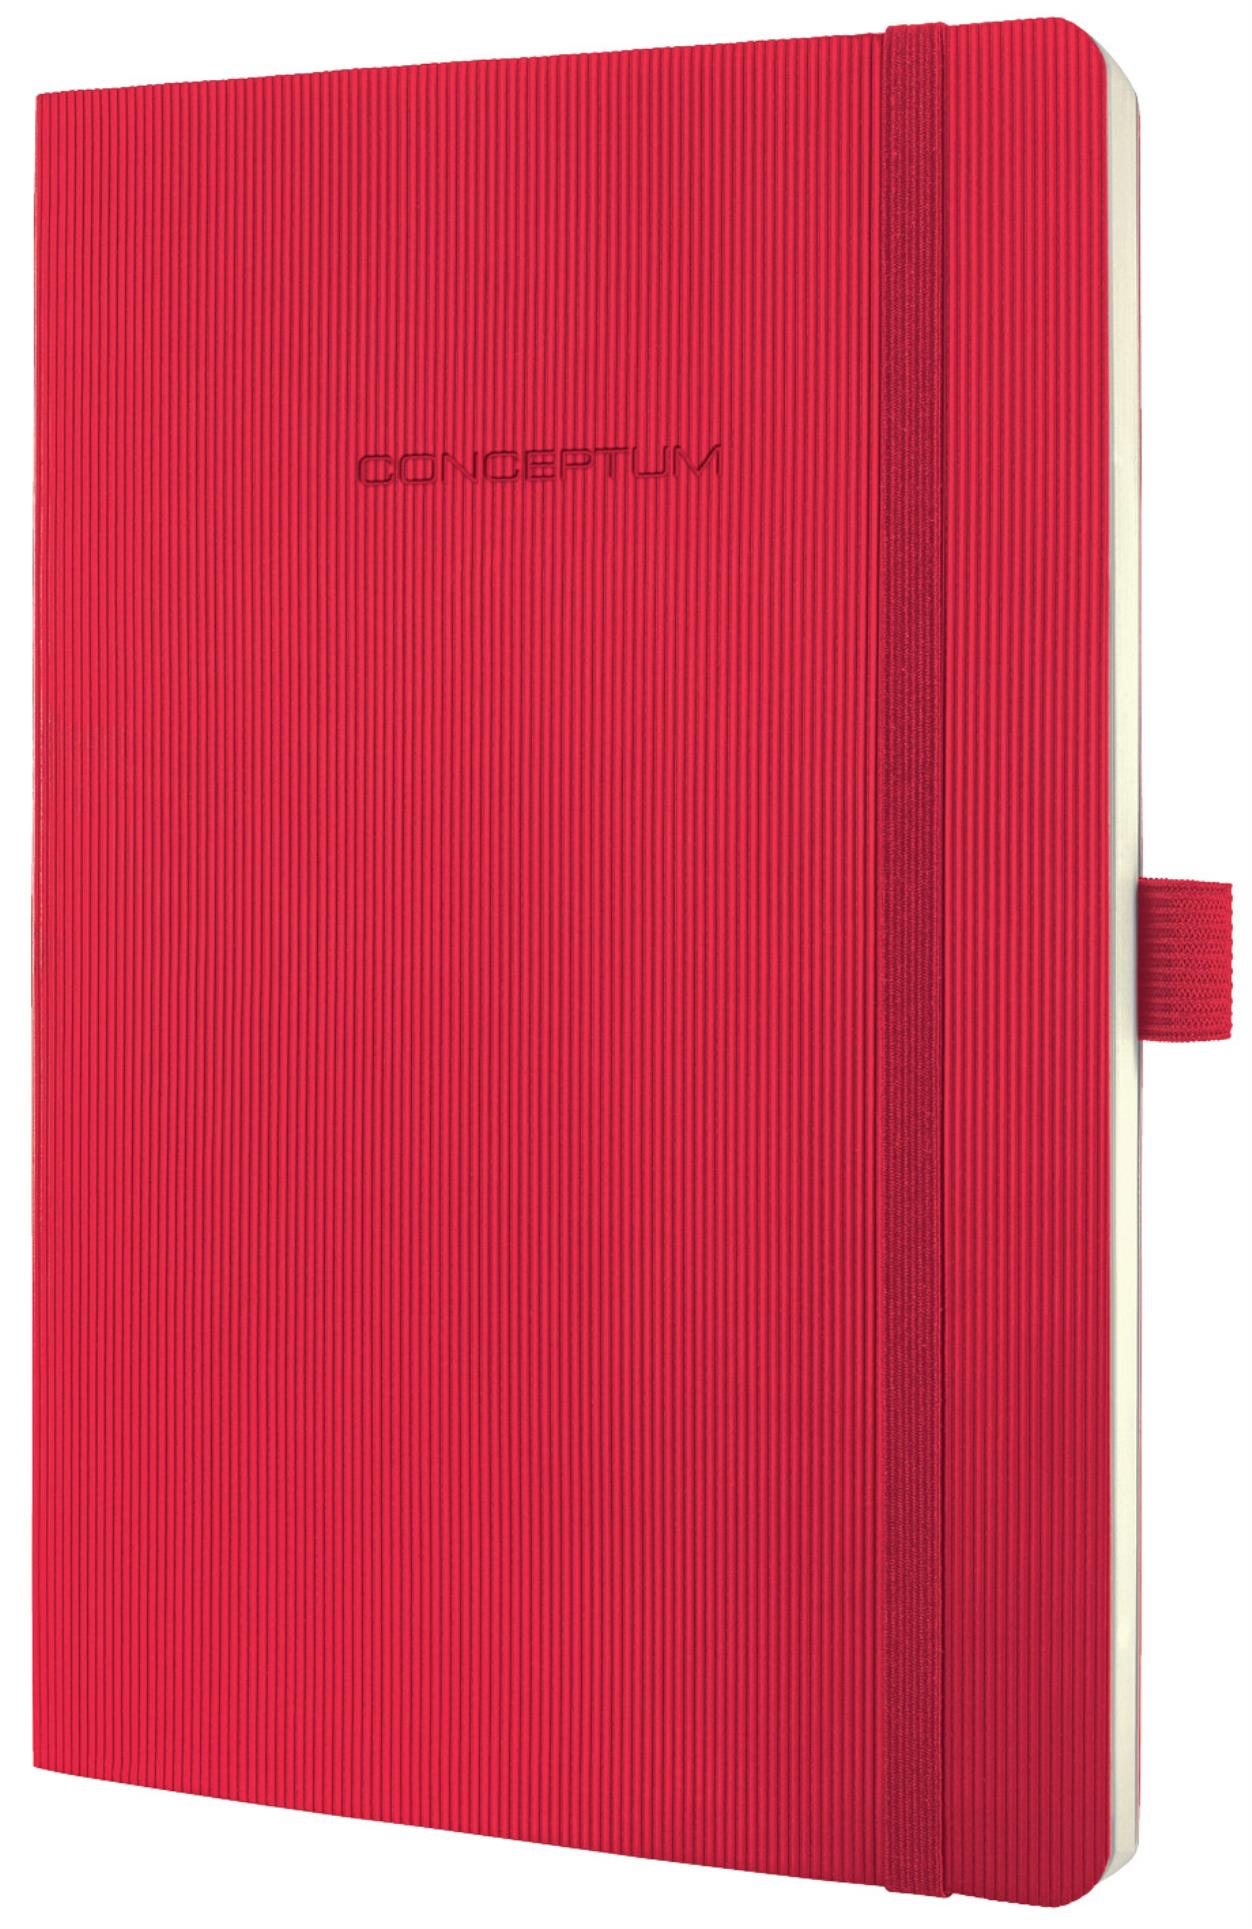 Záznamní kniha Sigel Conceptum - Softcover, A5, linkovaná, červená